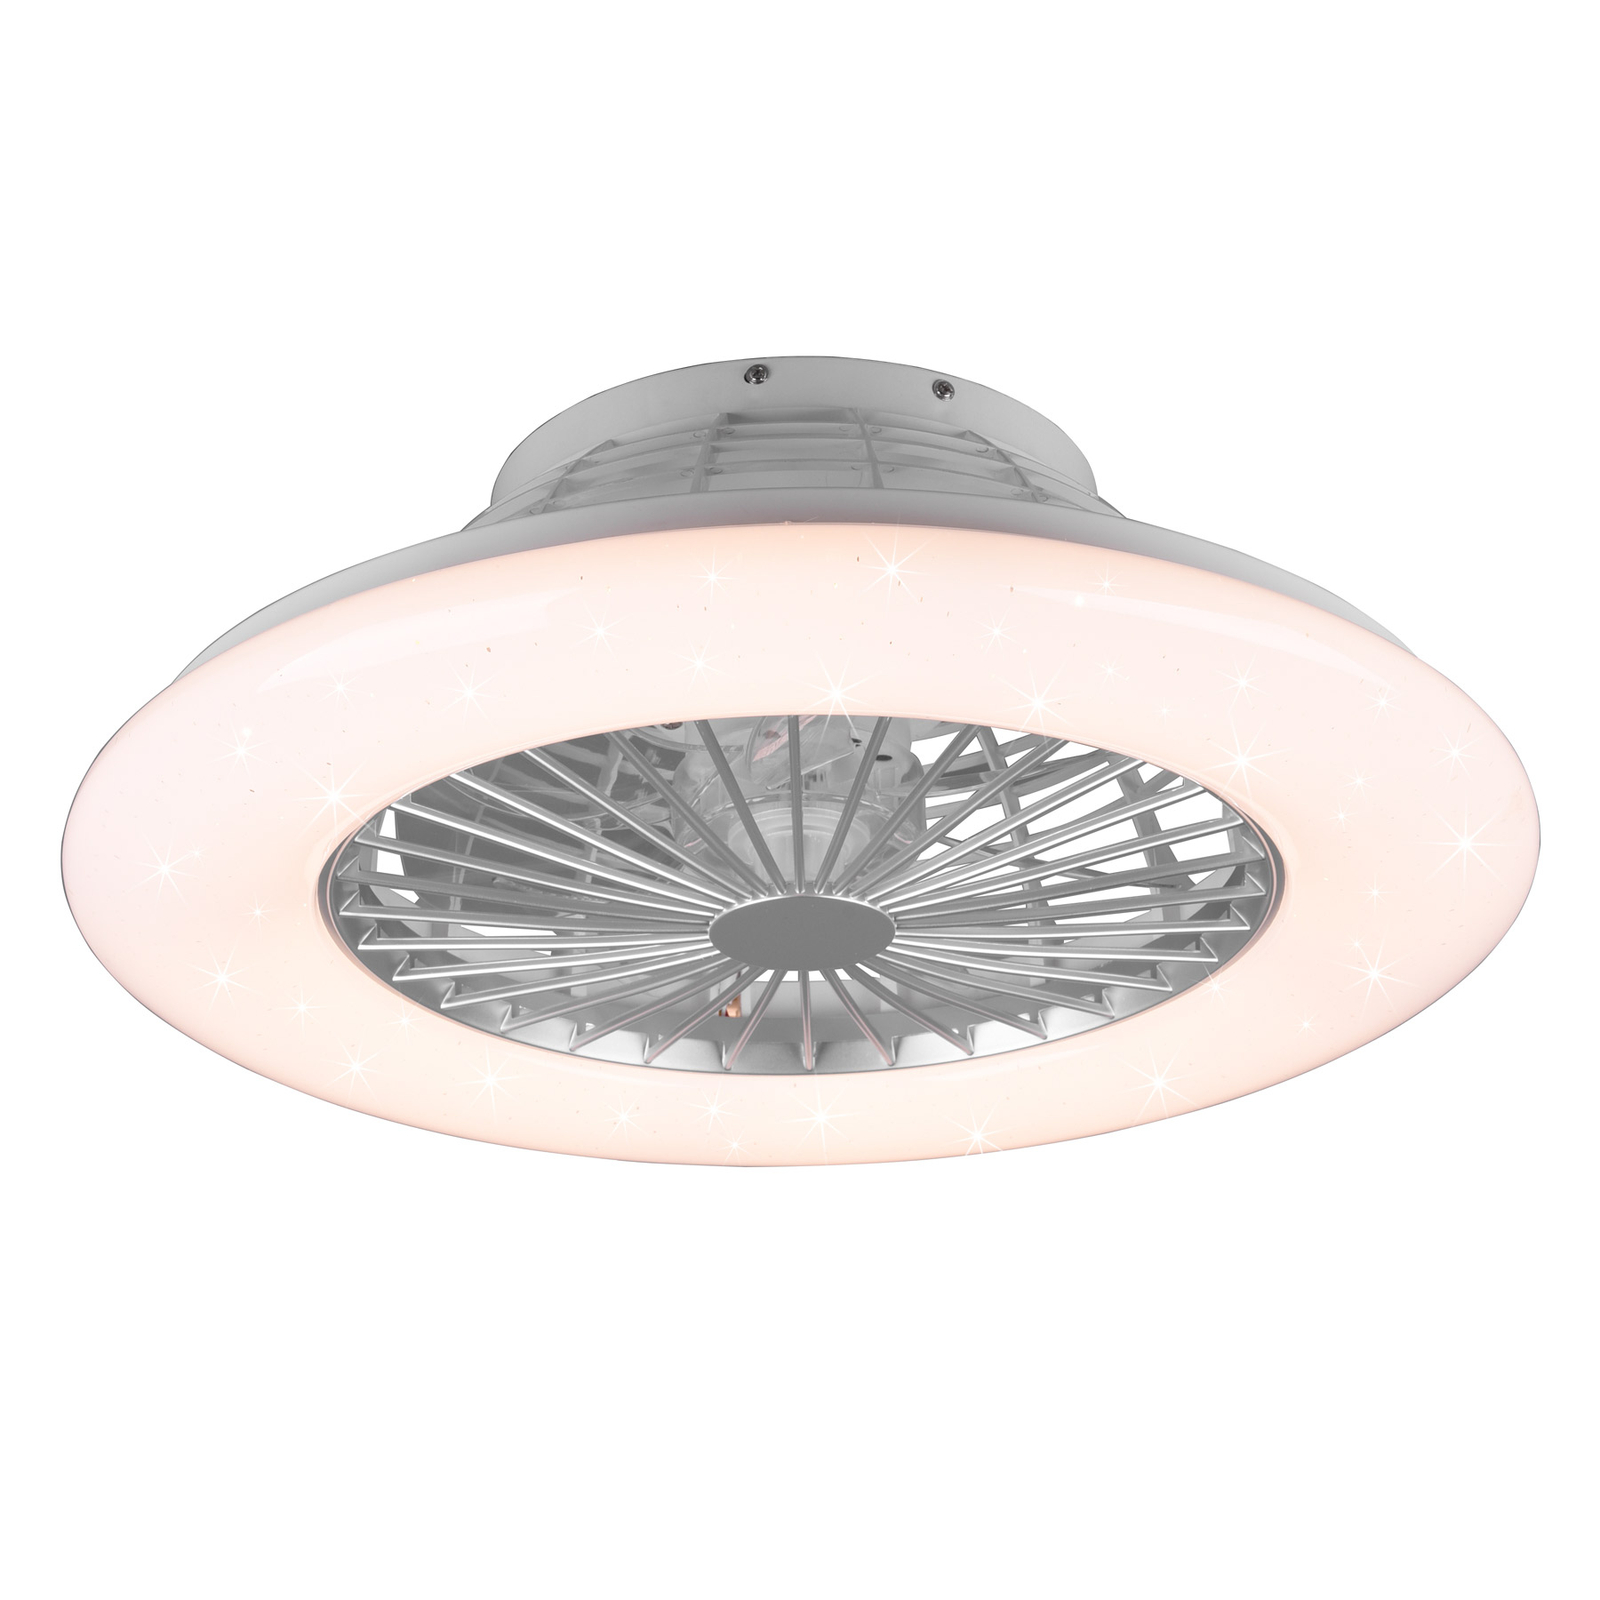 Starluna Vlado LED ceiling fan, white round RGB